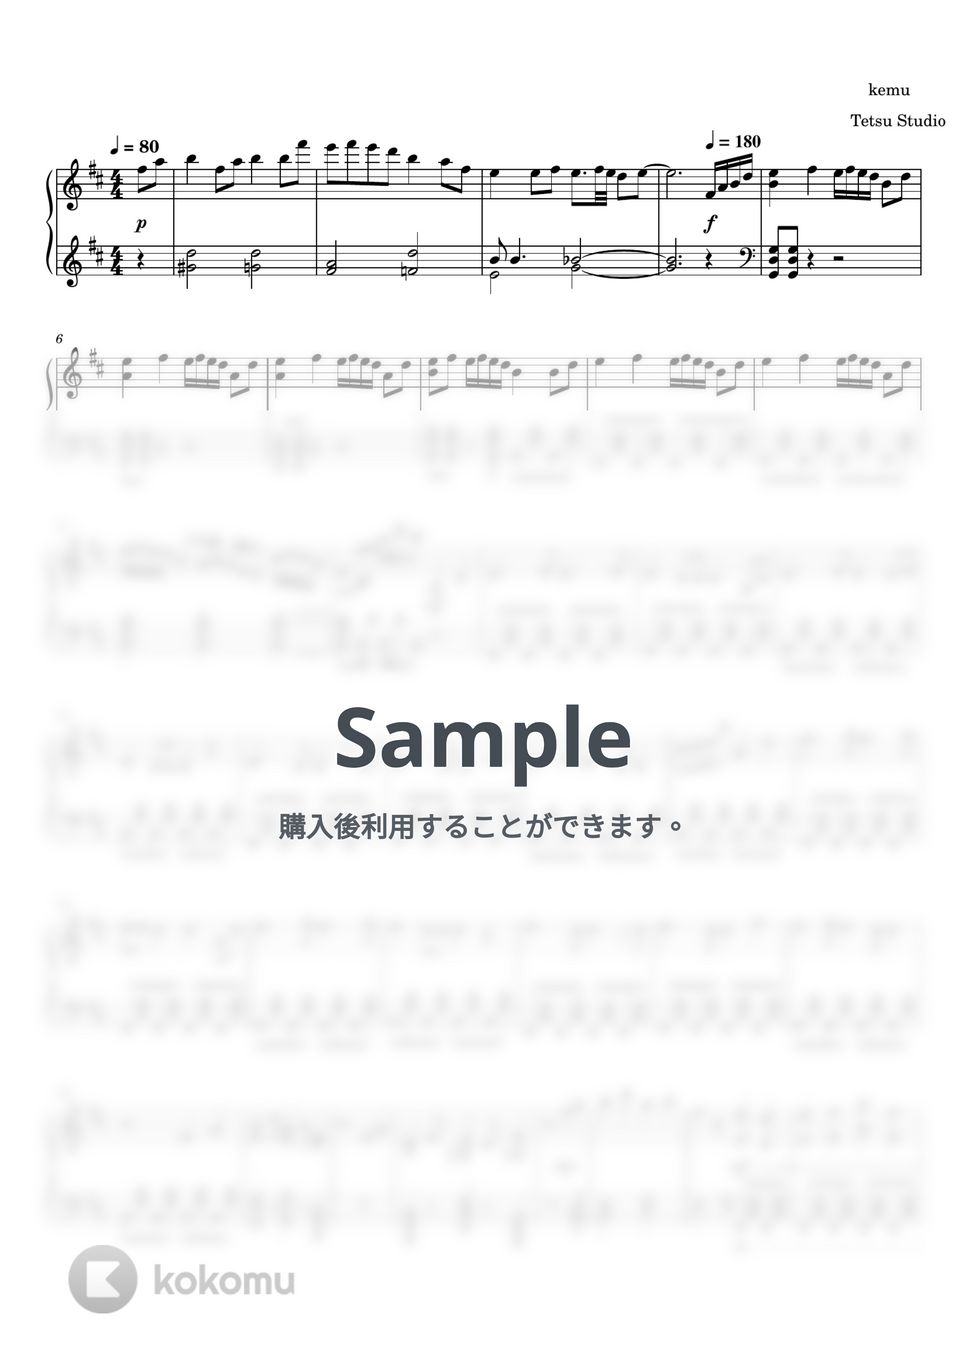 kemu - 六兆年と一夜物語 (ピアノソロ 上級) by Tetsu Studio